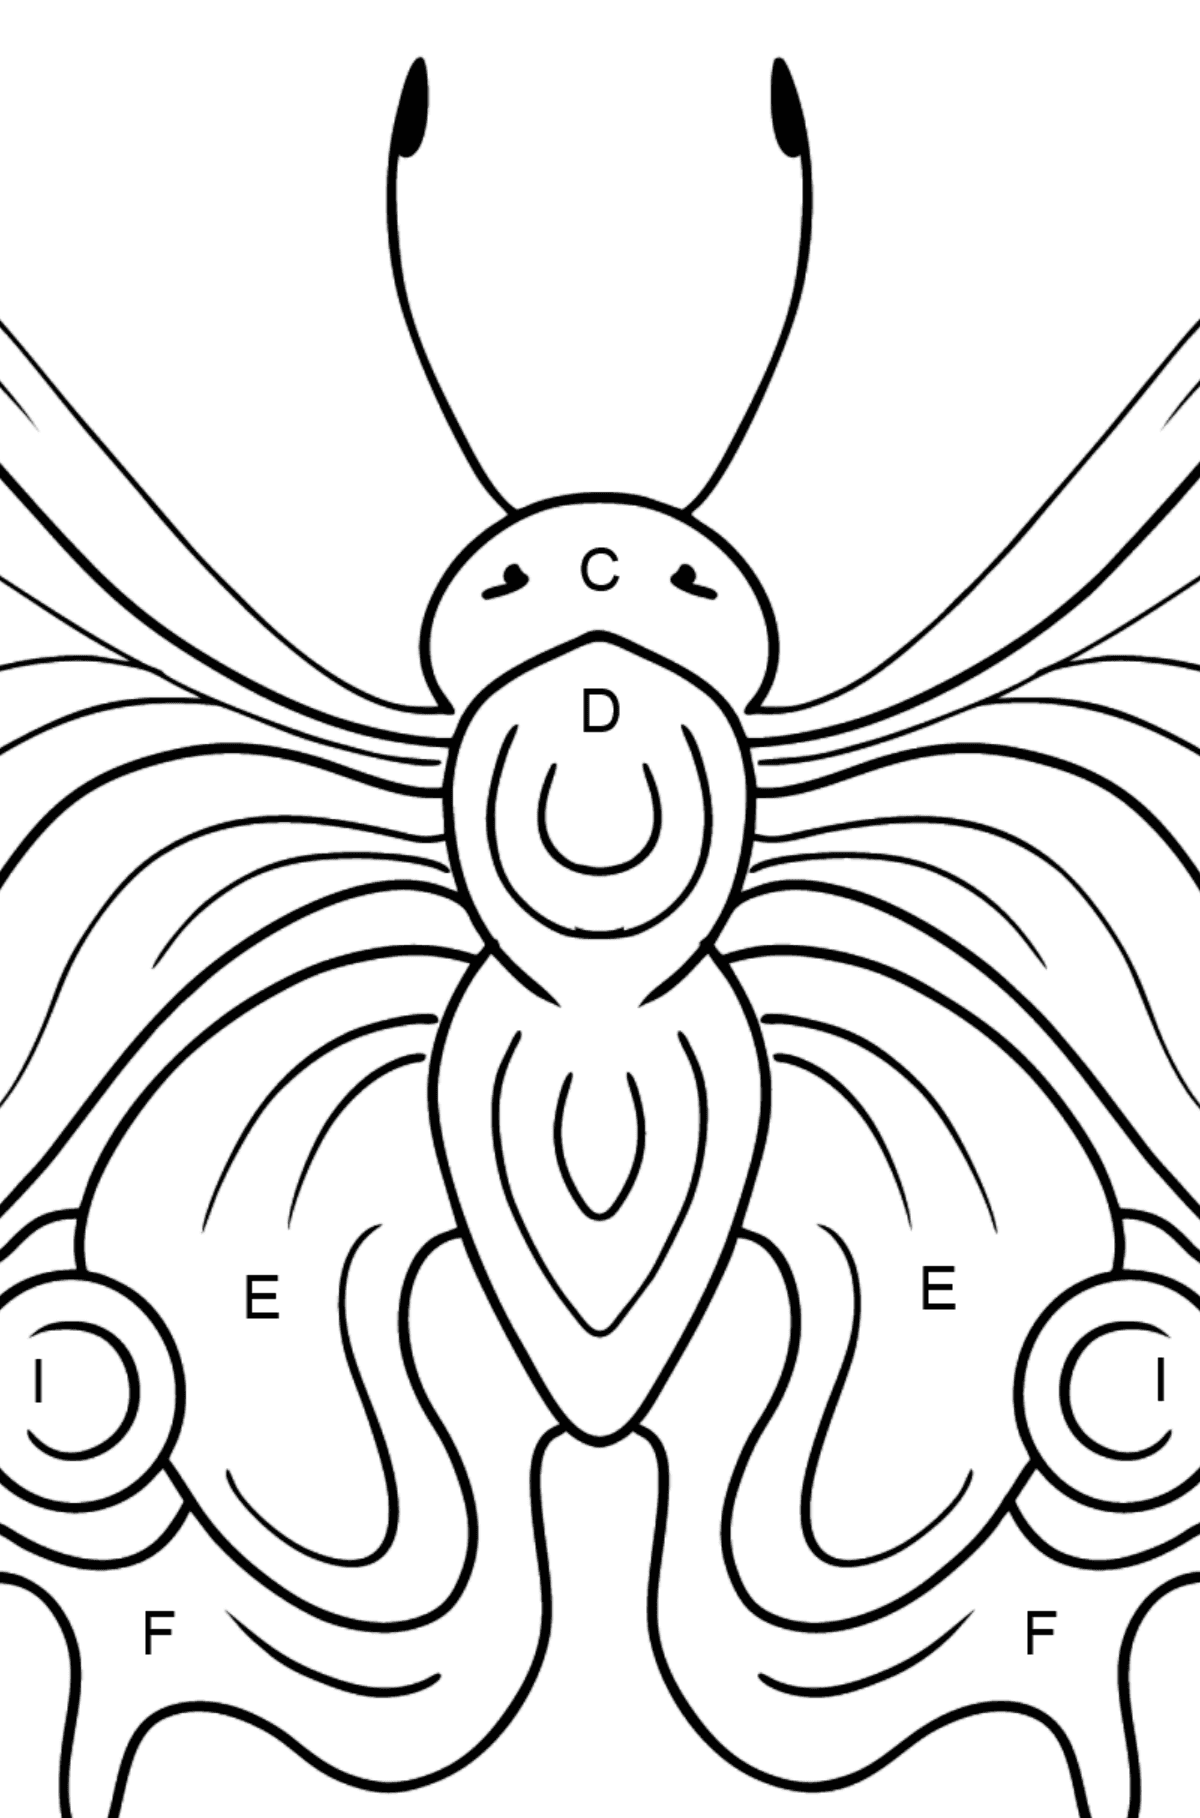 Dibujo de Mariposa pavo real para colorear - Colorear por Letras para Niños